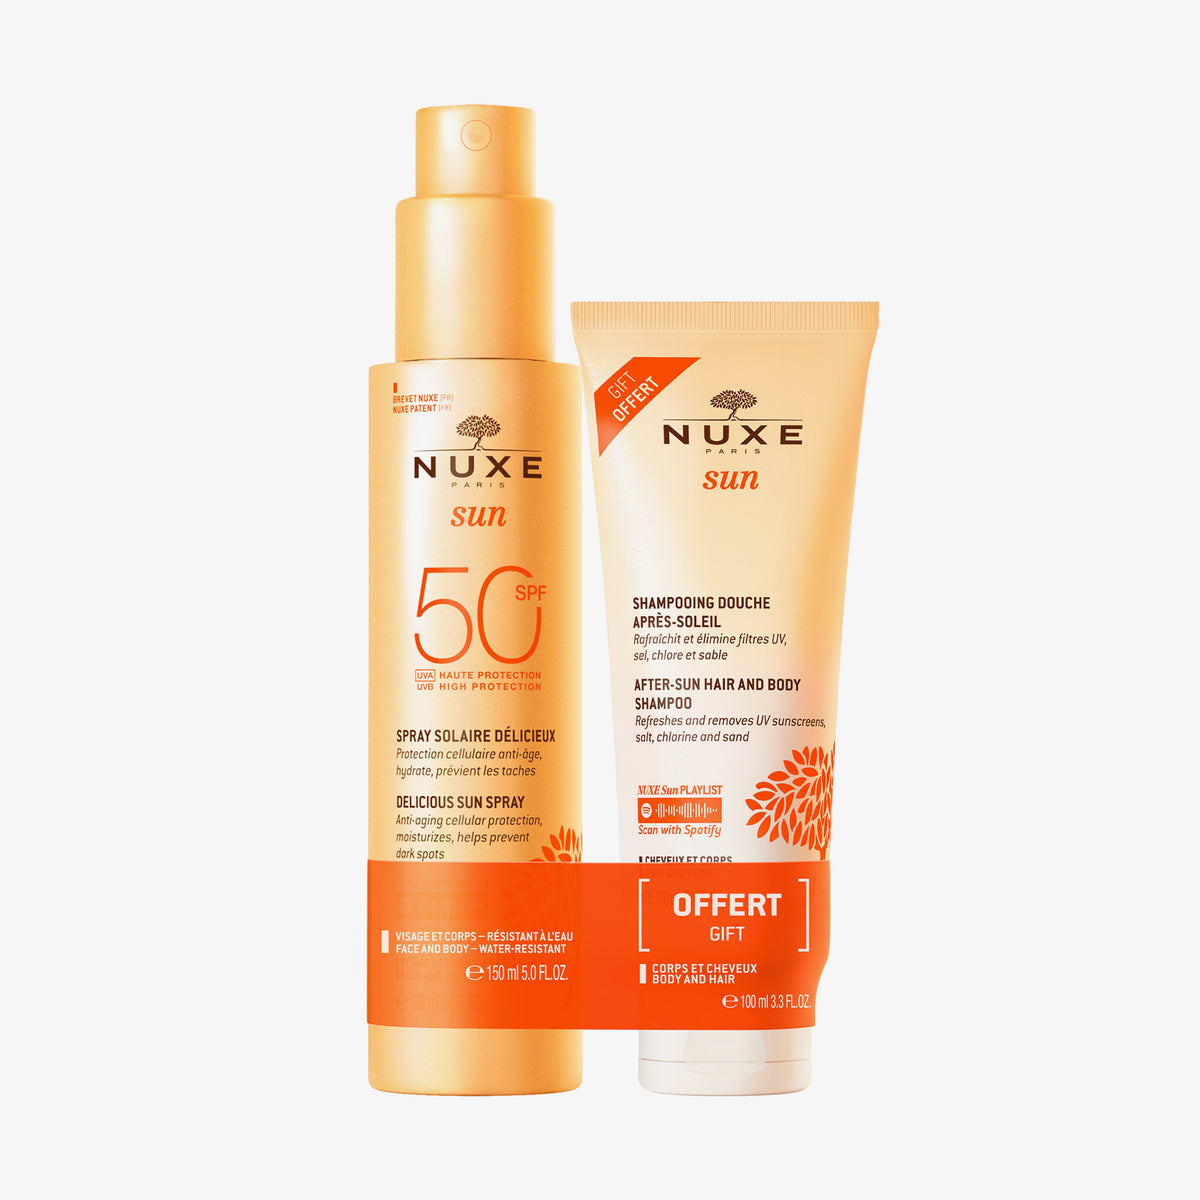 NUXE | NUXE Sun Set Spray LSF 50 + Gratis After-Sun